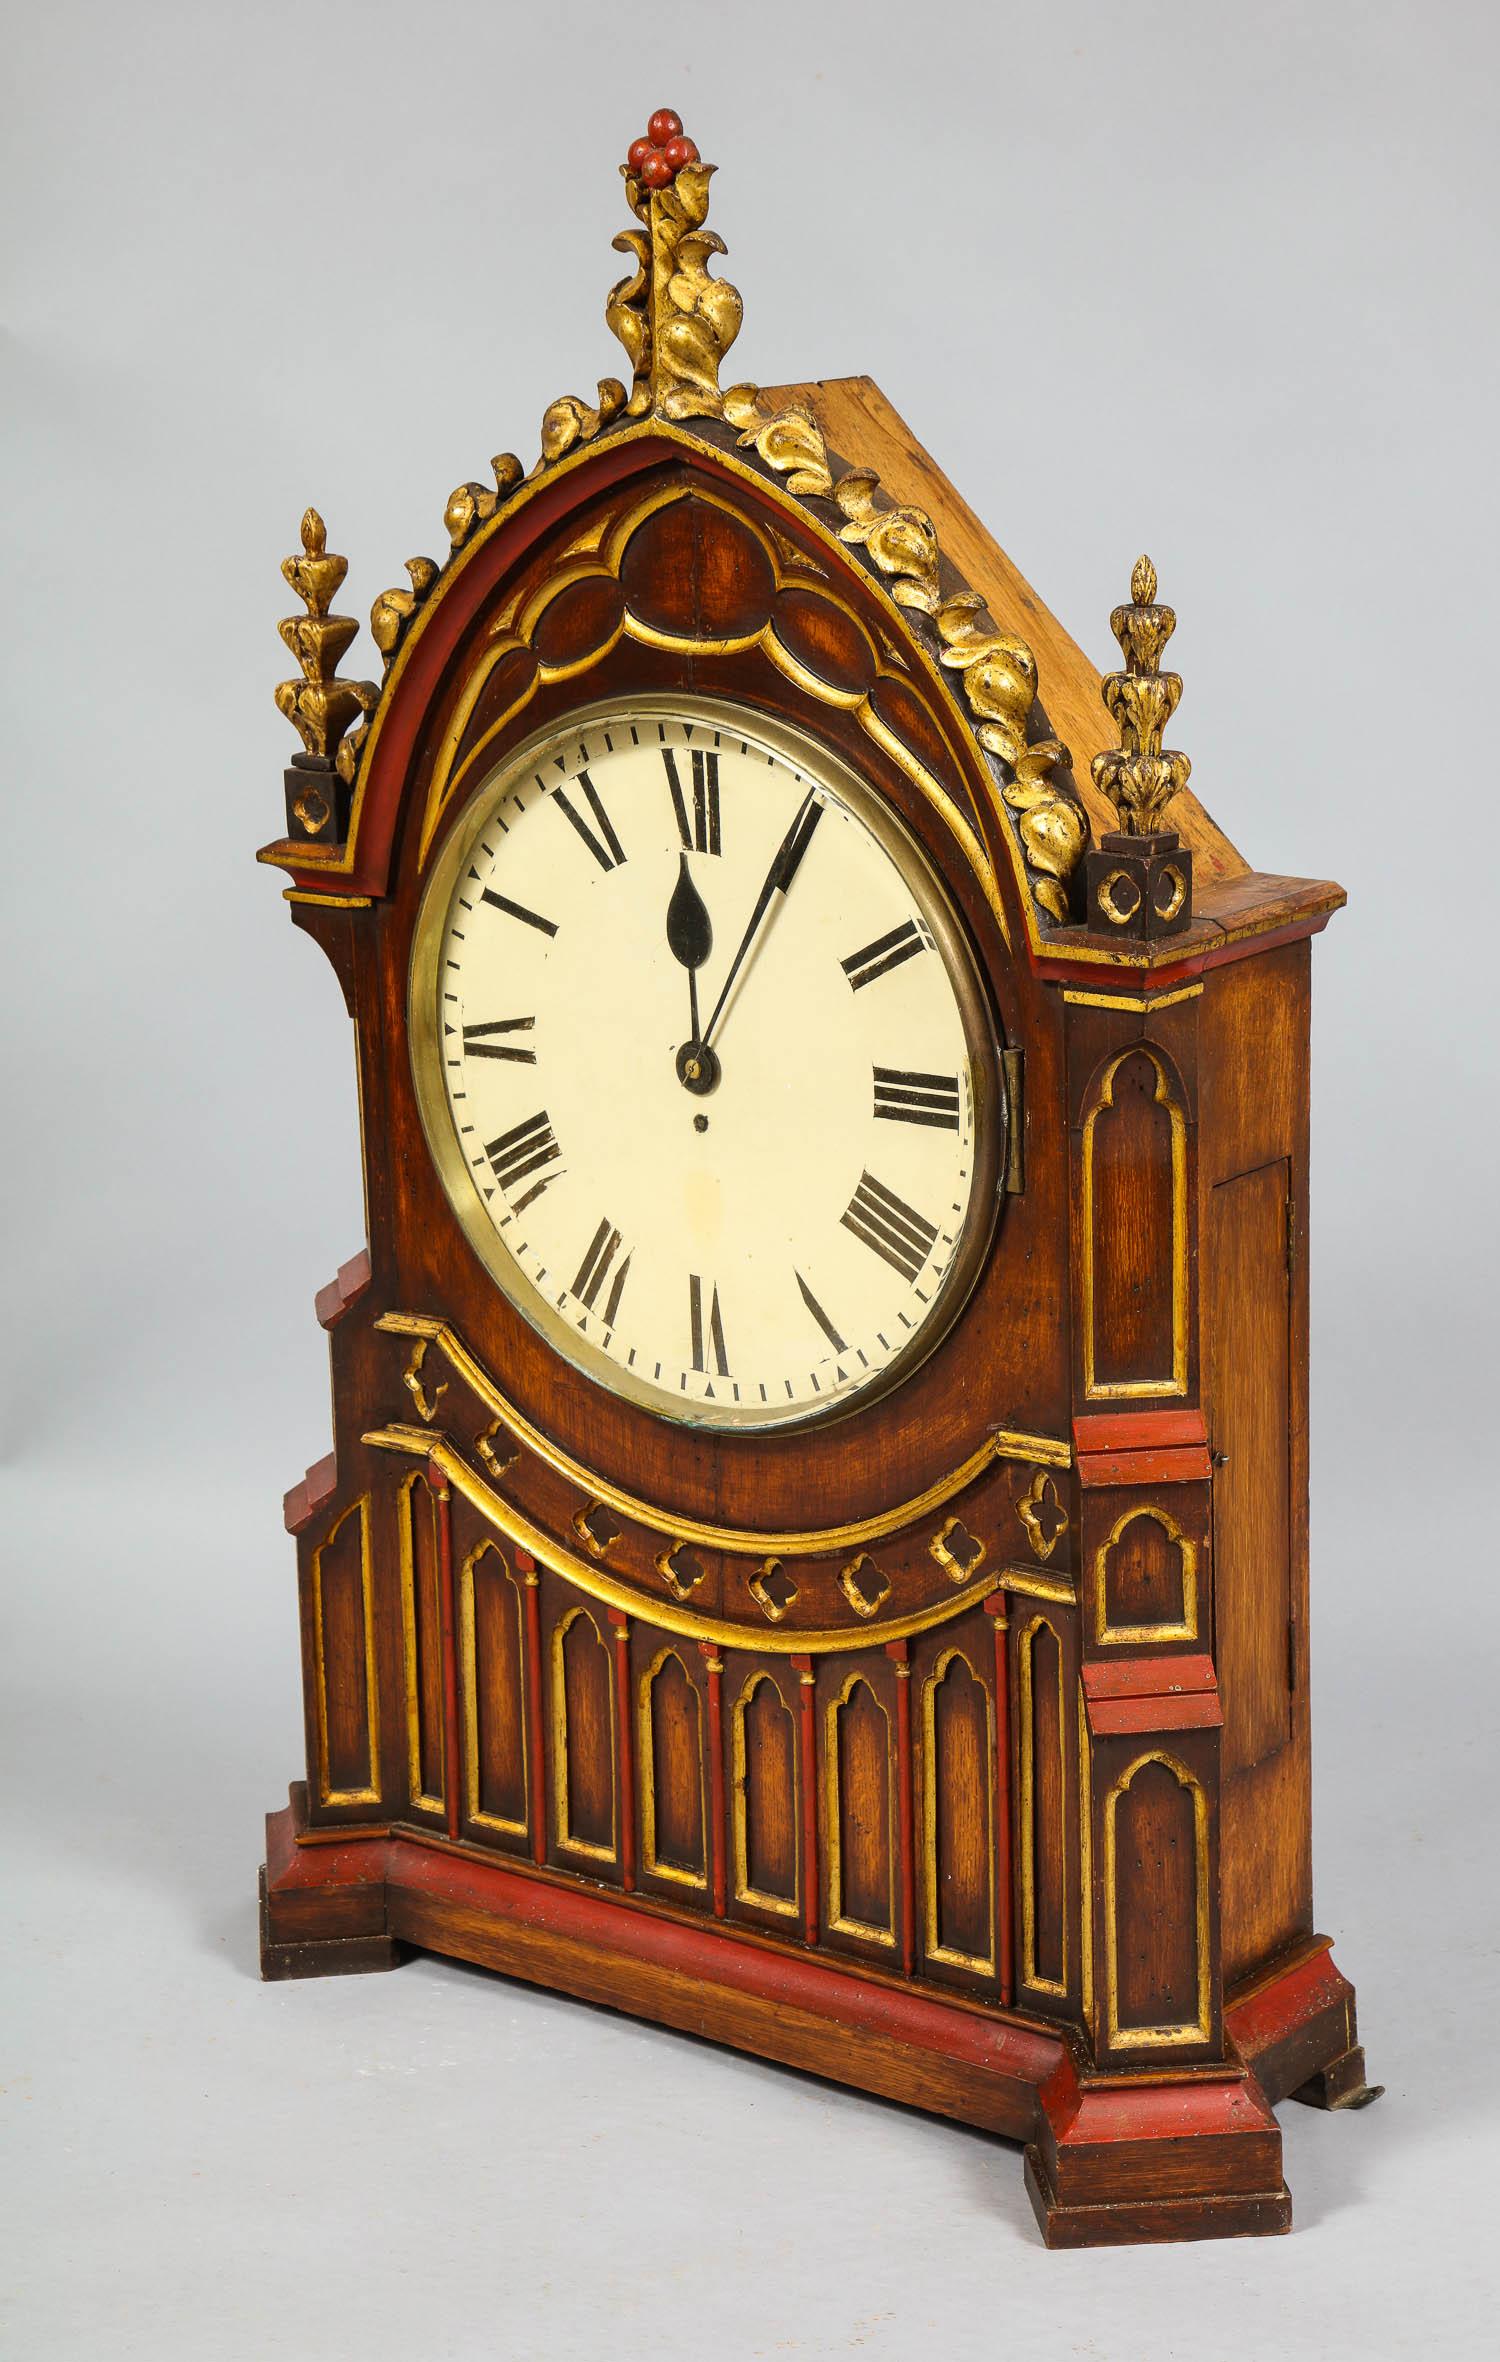 Sehr feine englische gotische Uhr von Anfang bis Mitte des 19. Jahrhunderts mit geschnitztem und vergoldetem Giebel und polychrom verziertem Gehäuse mit dreiflügeligem Maßwerk, das Uhrwerk eine sehr feine 8-Tage-Uhr mit einem Schneckenwerk,